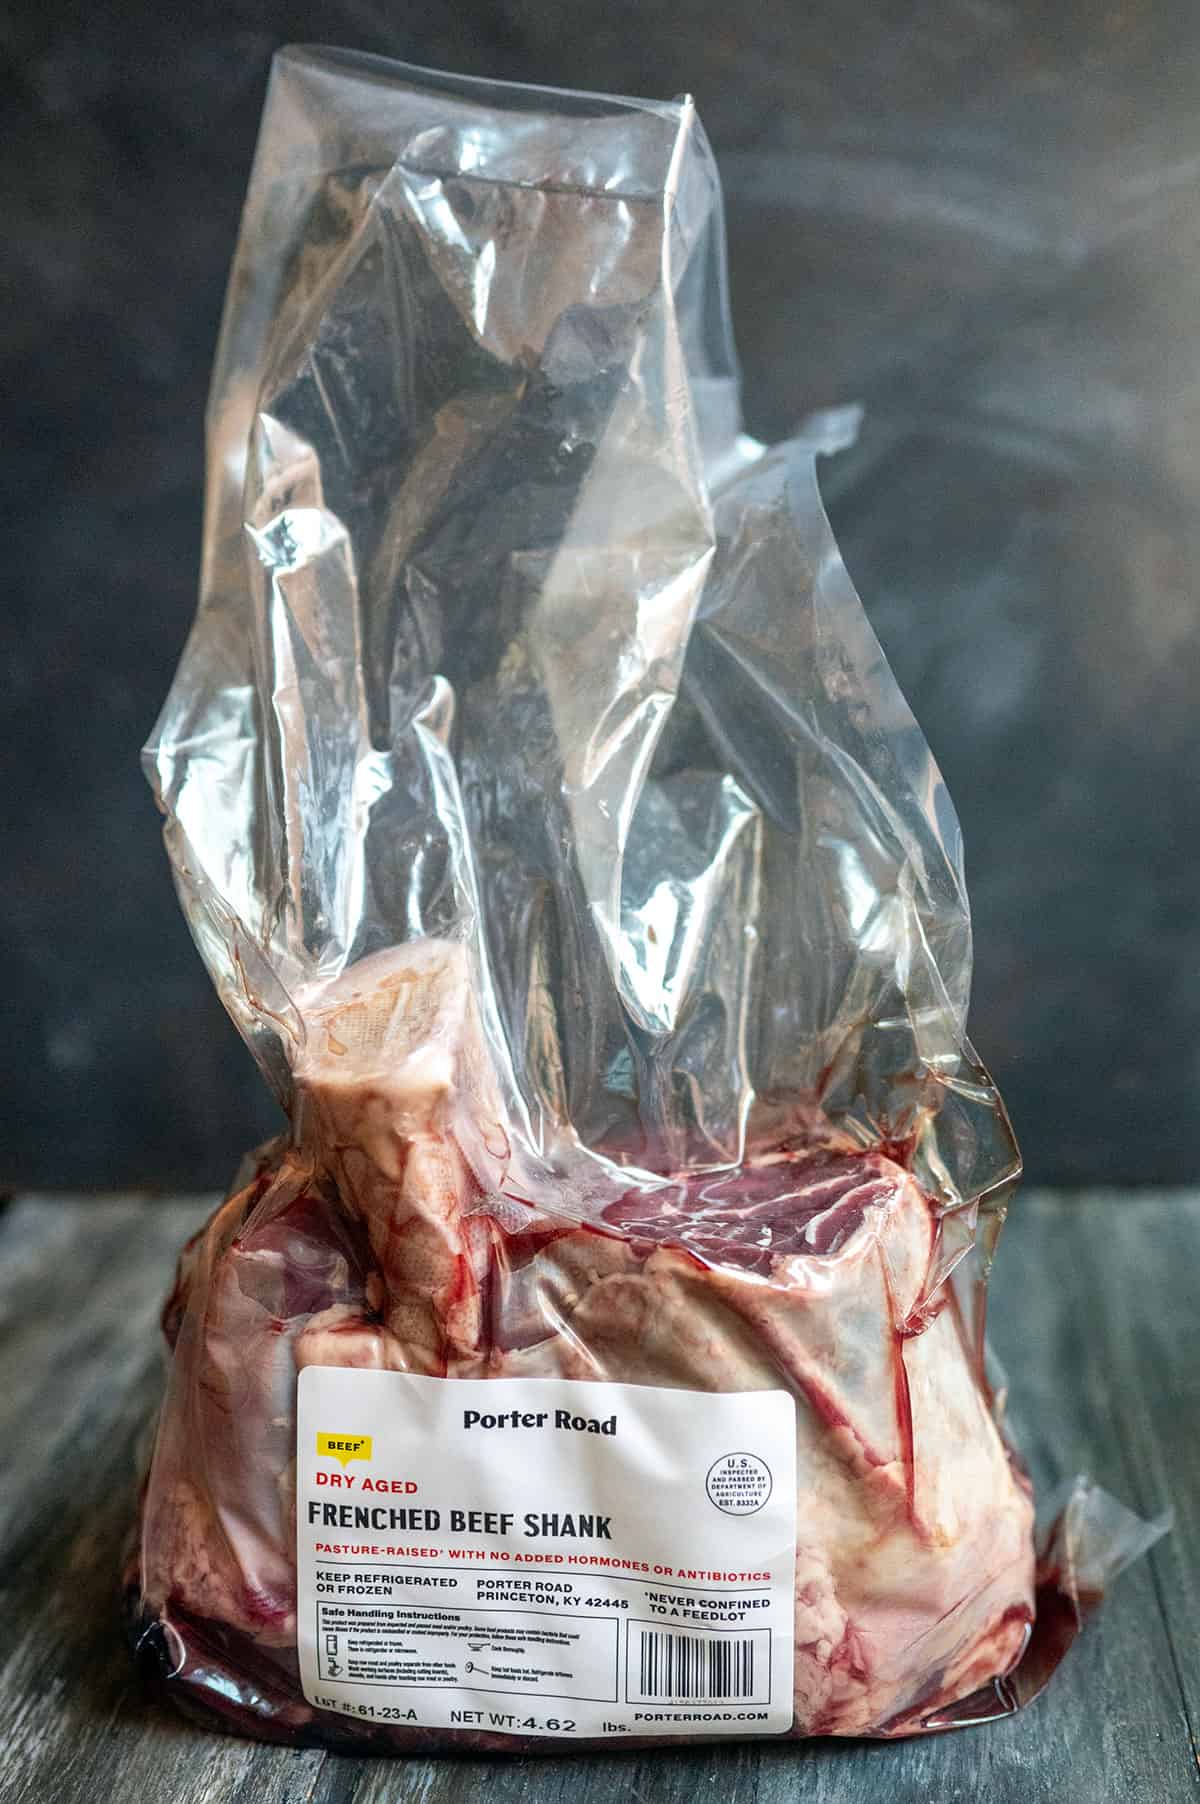 Beef shank in package.